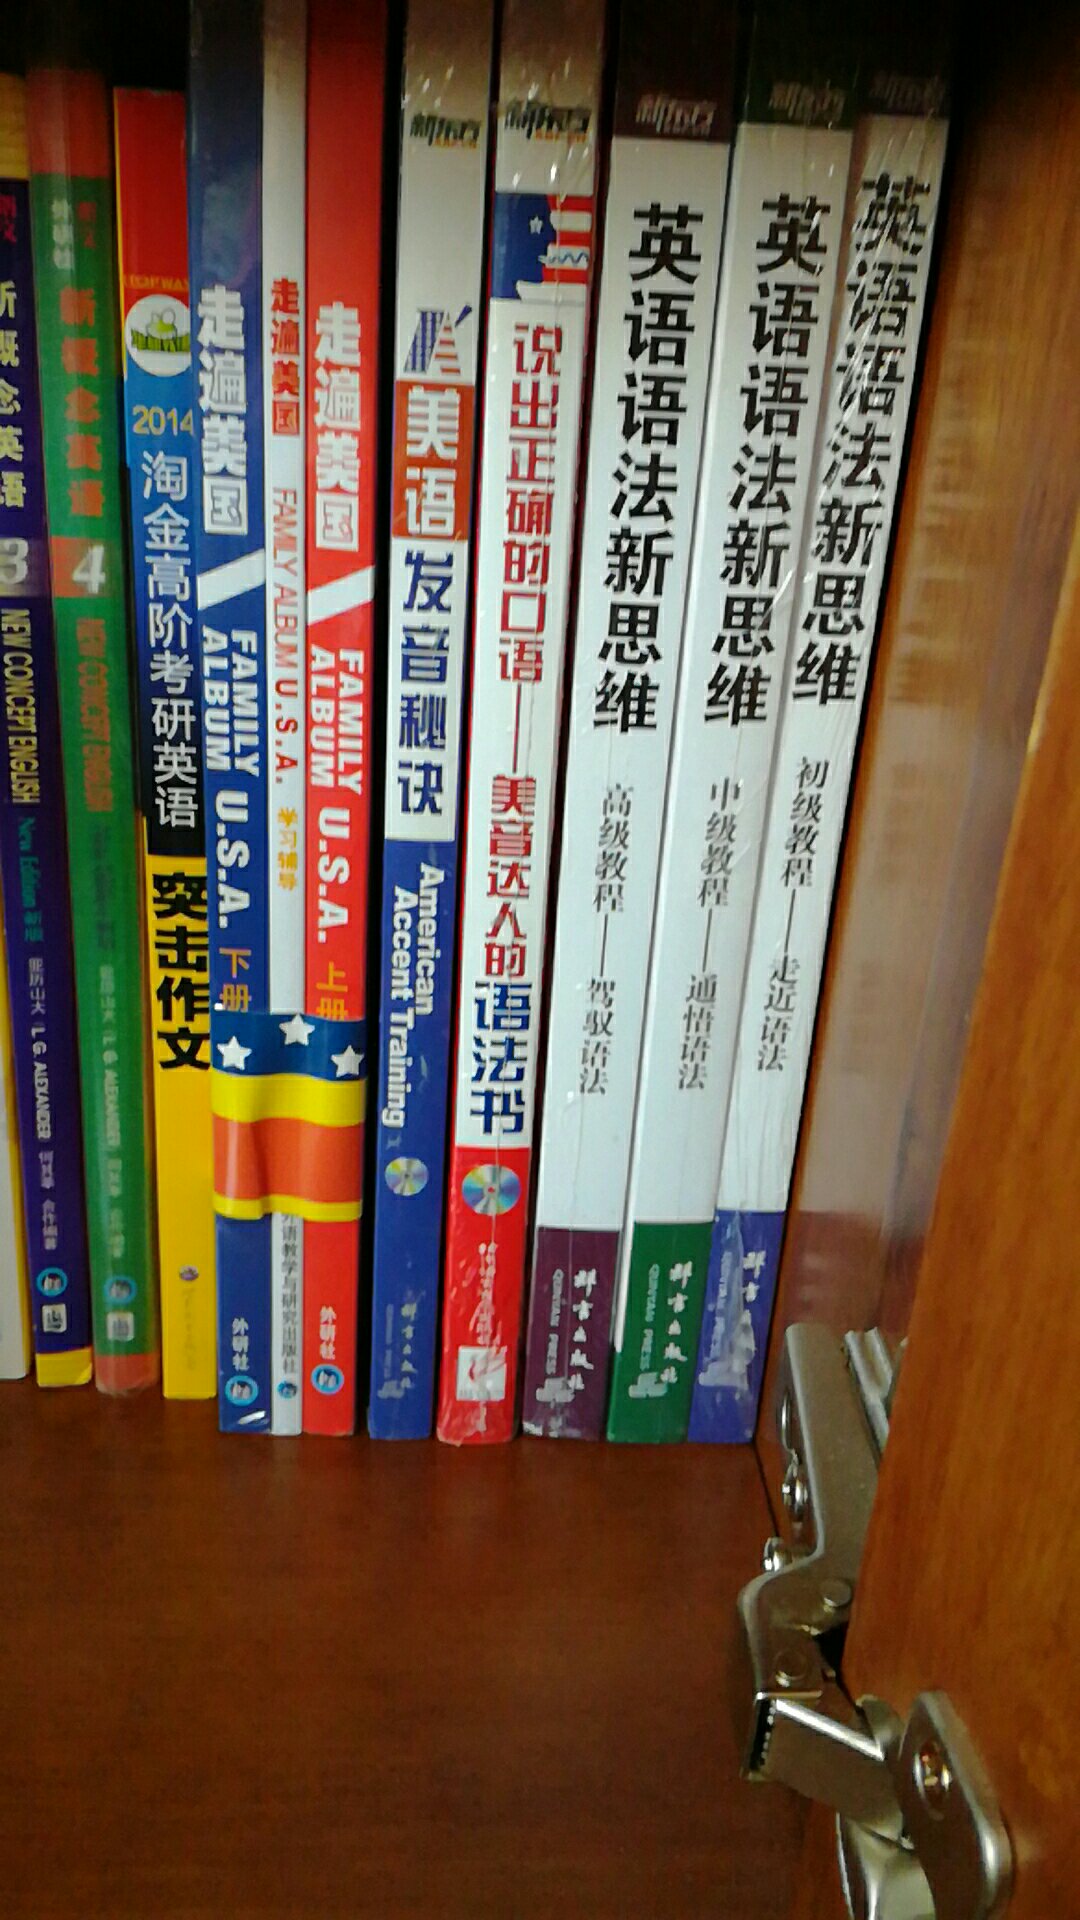 买了很多英语书，个人感觉英语还是很重要的。内容比较多，希望有帮助。书质量很好。